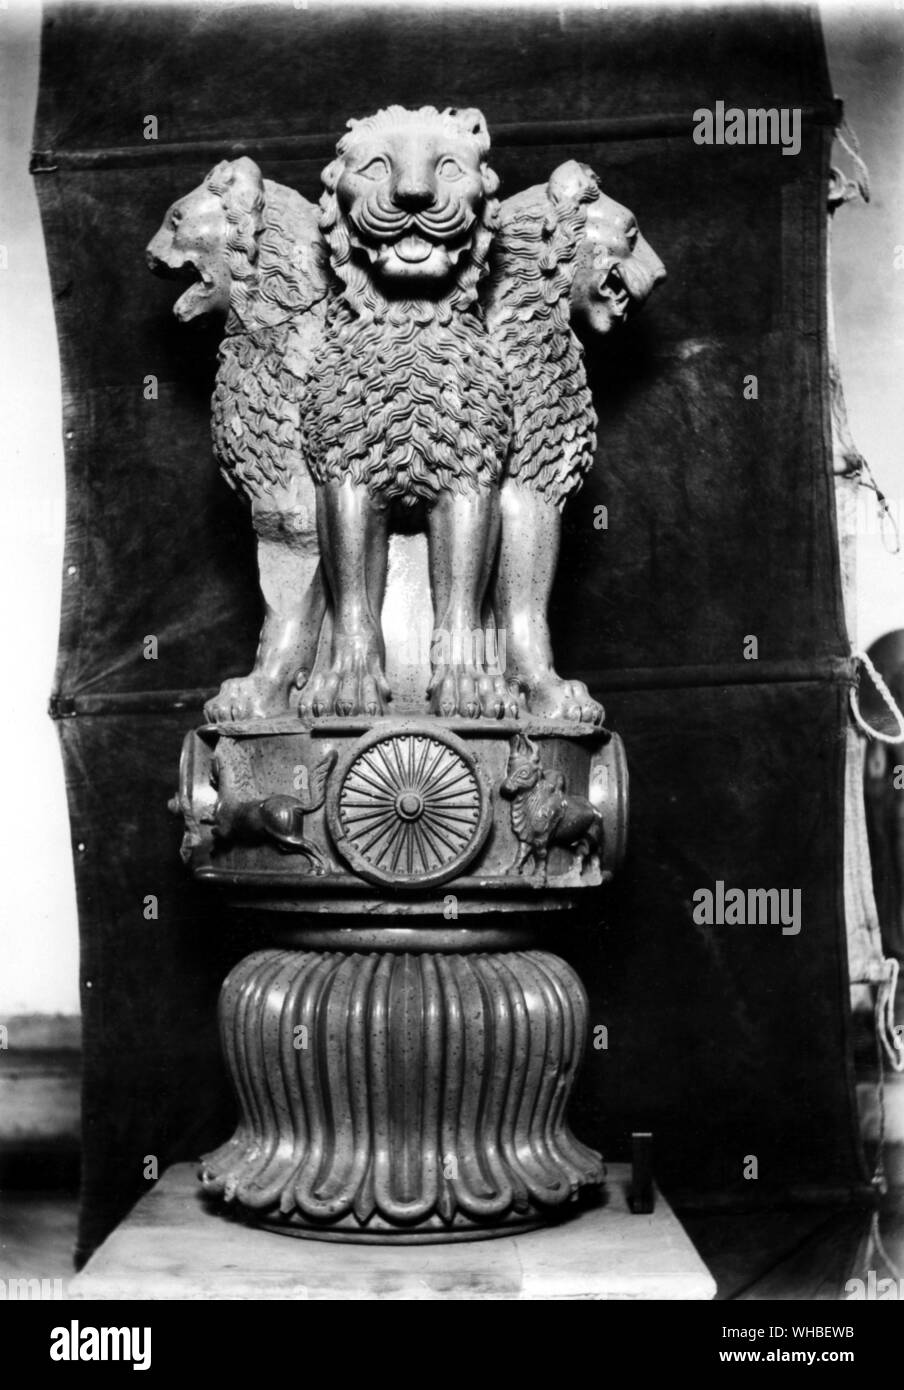 Asoka Säule mit drei Löwenköpfe angezeigt - die berühmte original Sandstein gemeißelte Lion Capital von Ashoka bei Sarnath Museum konserviert und ursprünglich um 250 v. Chr. errichtet auf einem Ashoka Säule bei Sarnath. Der Winkel, aus dem dieses Bild gemacht wurde, abzüglich der invertierte glockenförmige Lotus Blume, wurde angenommen, wie das nationale Emblem von Indien, das Pferd auf der linken und der Stier auf der rechten Seite des Ashoka Chakra in die runde Basis, auf der die vier Indischen Löwen zurück Stehen. Auf der anderen Seite gibt es ein Elefant und ein Löwe statt. Das Rad Ashoka Chakra aus seiner Stockfoto